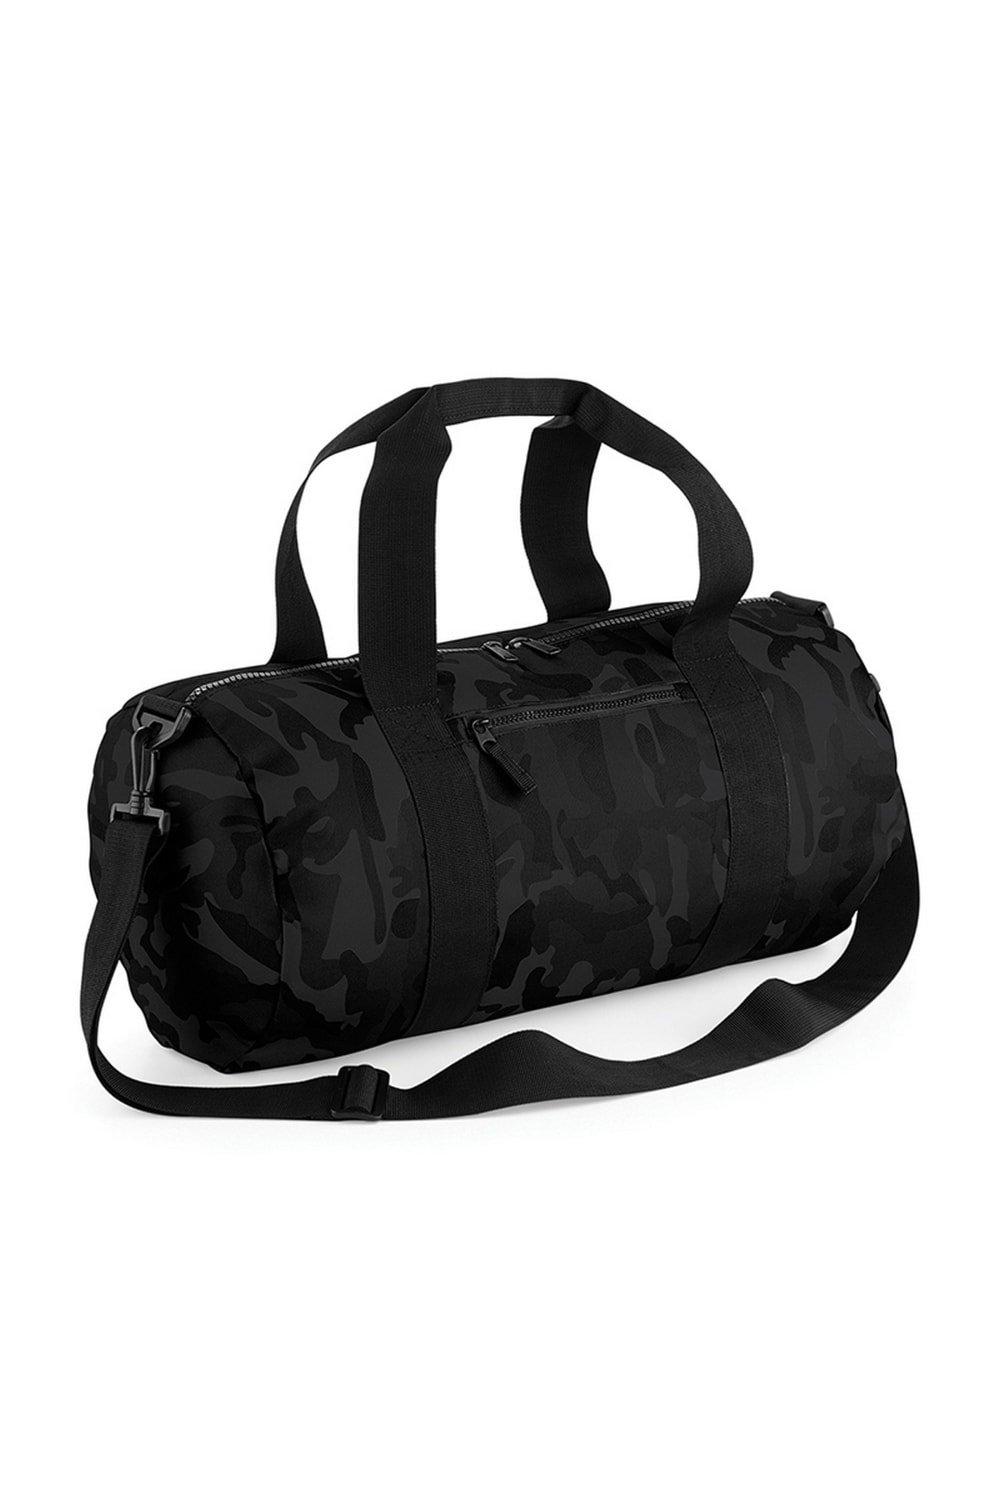 Камуфляжная бочка/спортивная сумка (20 литров) Bagbase, черный дубовая бочка для алкоголя 5 литров